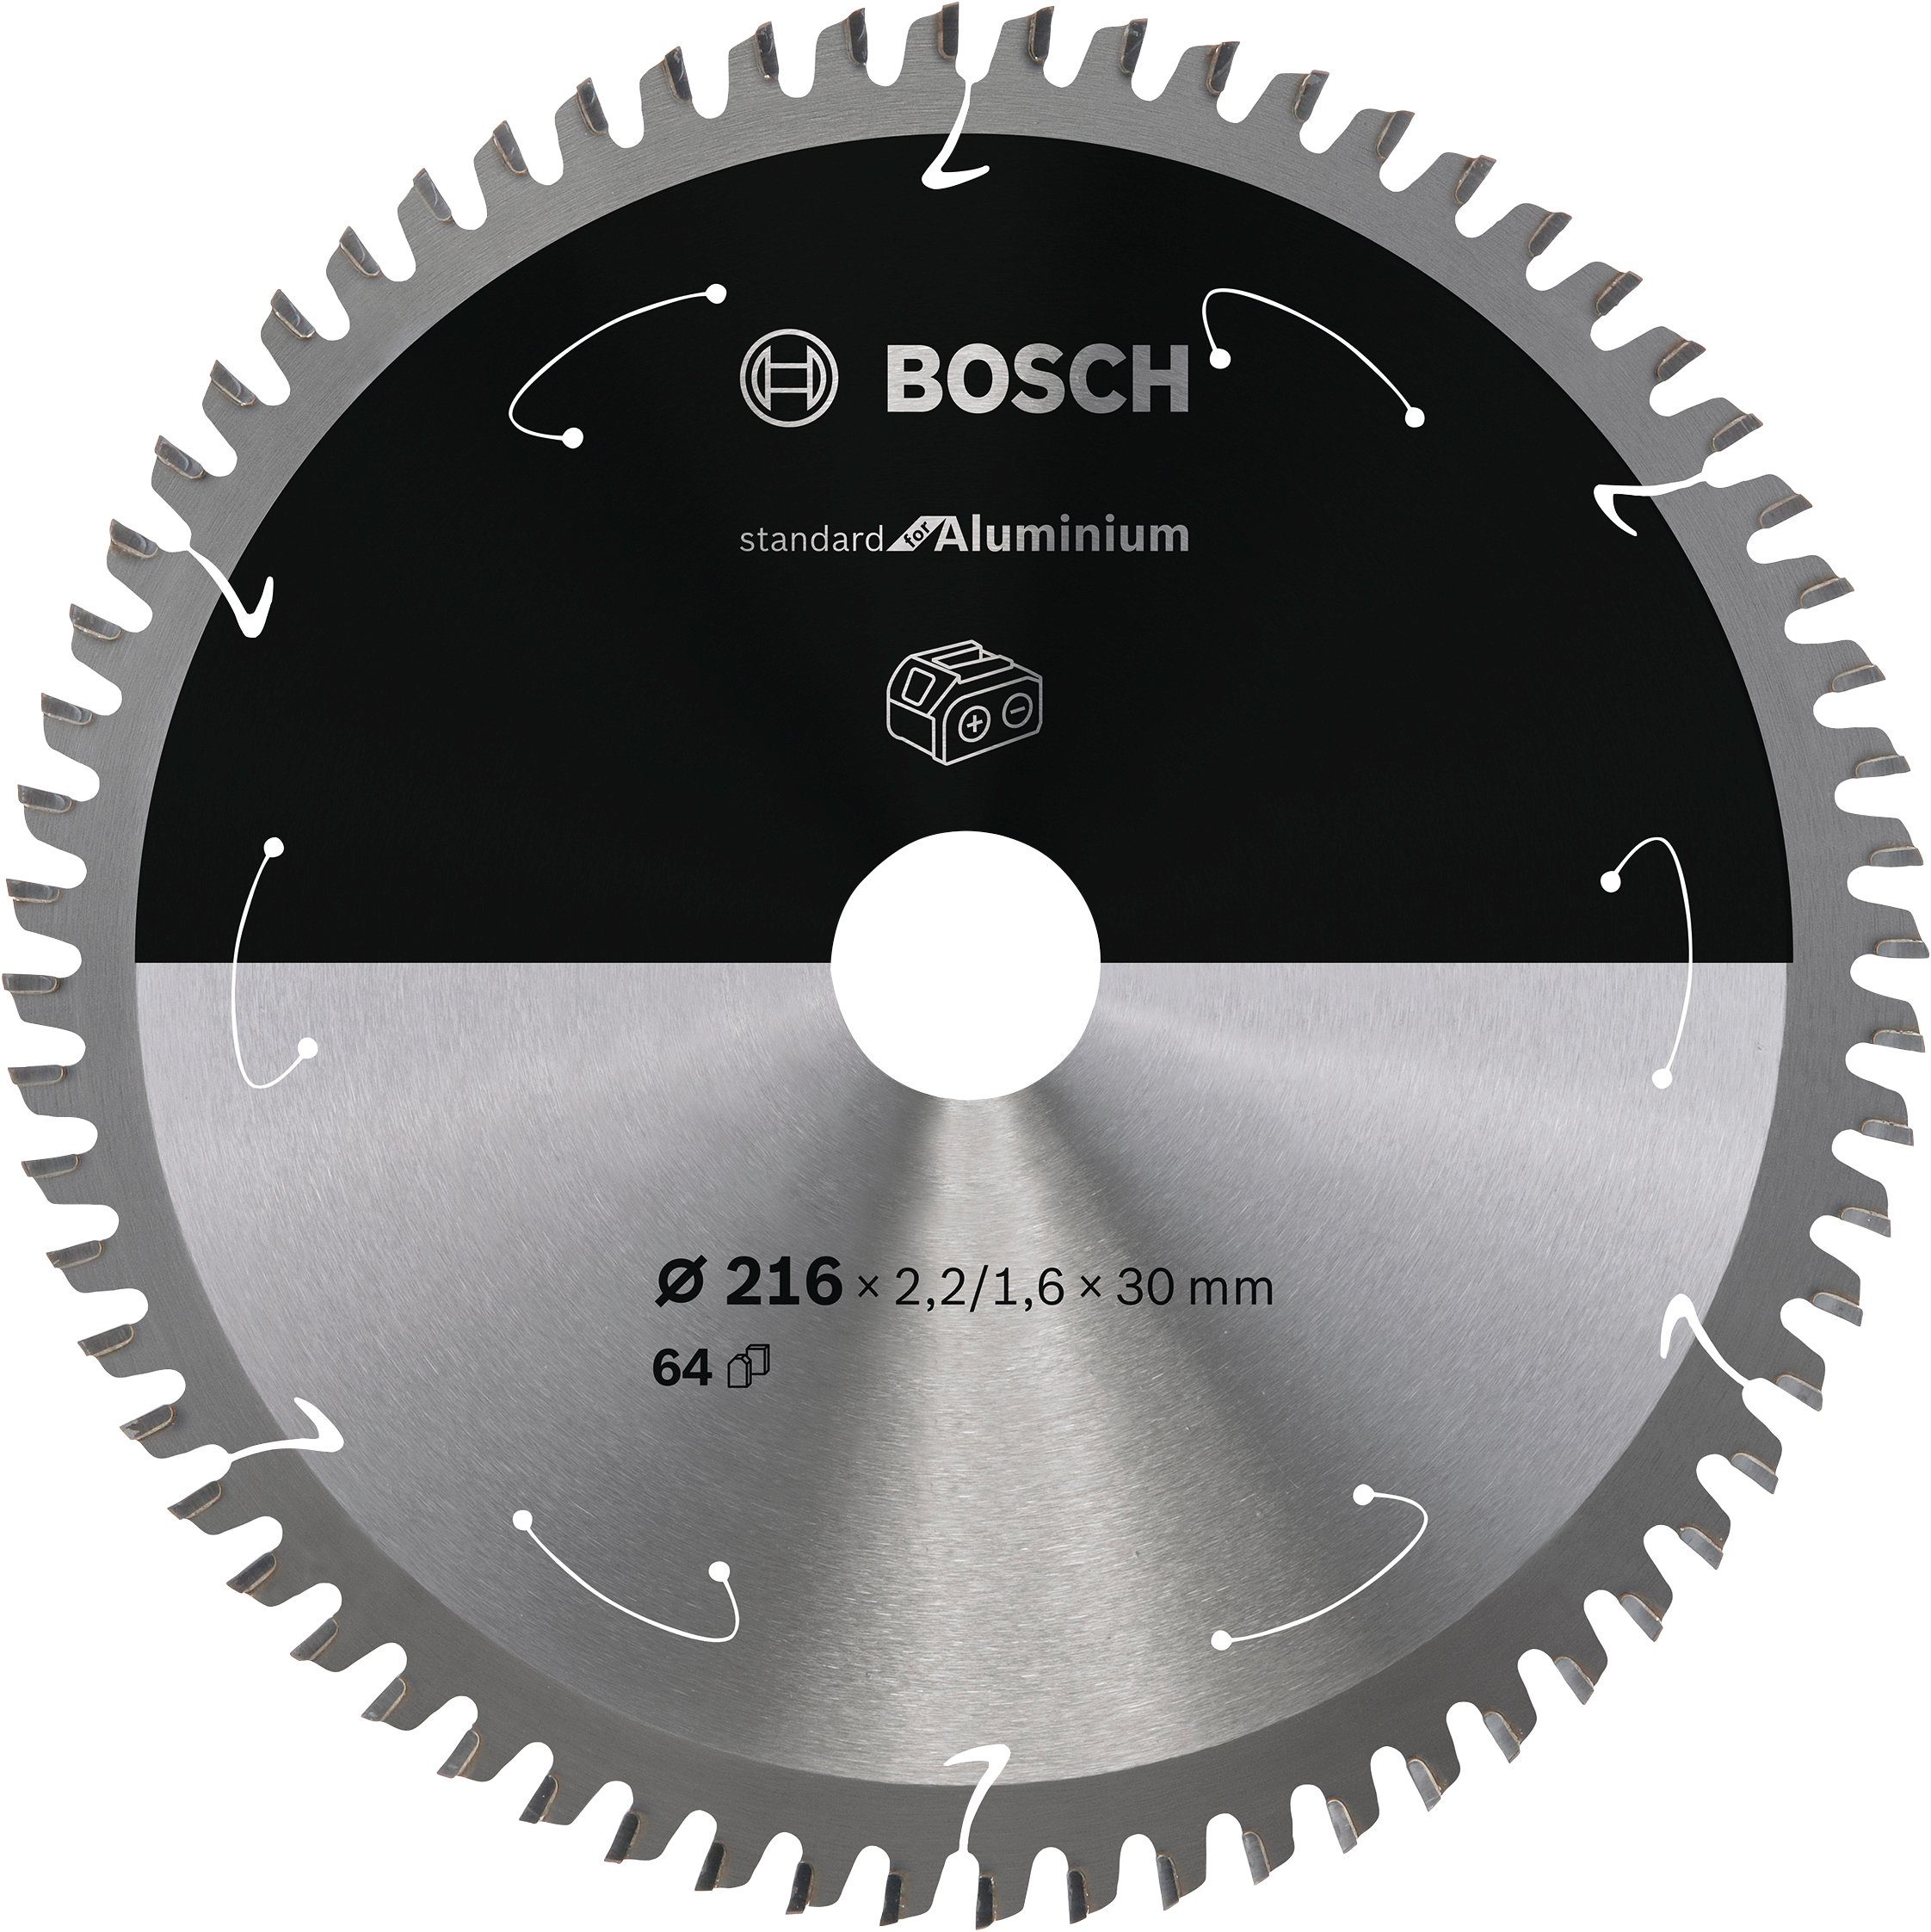 Bosch Professional Kreissägeblatt Akkusägen, 64 Zähne Aluminium, für for 216 x 2,2/1,6 x 30, 2608837776, Standard